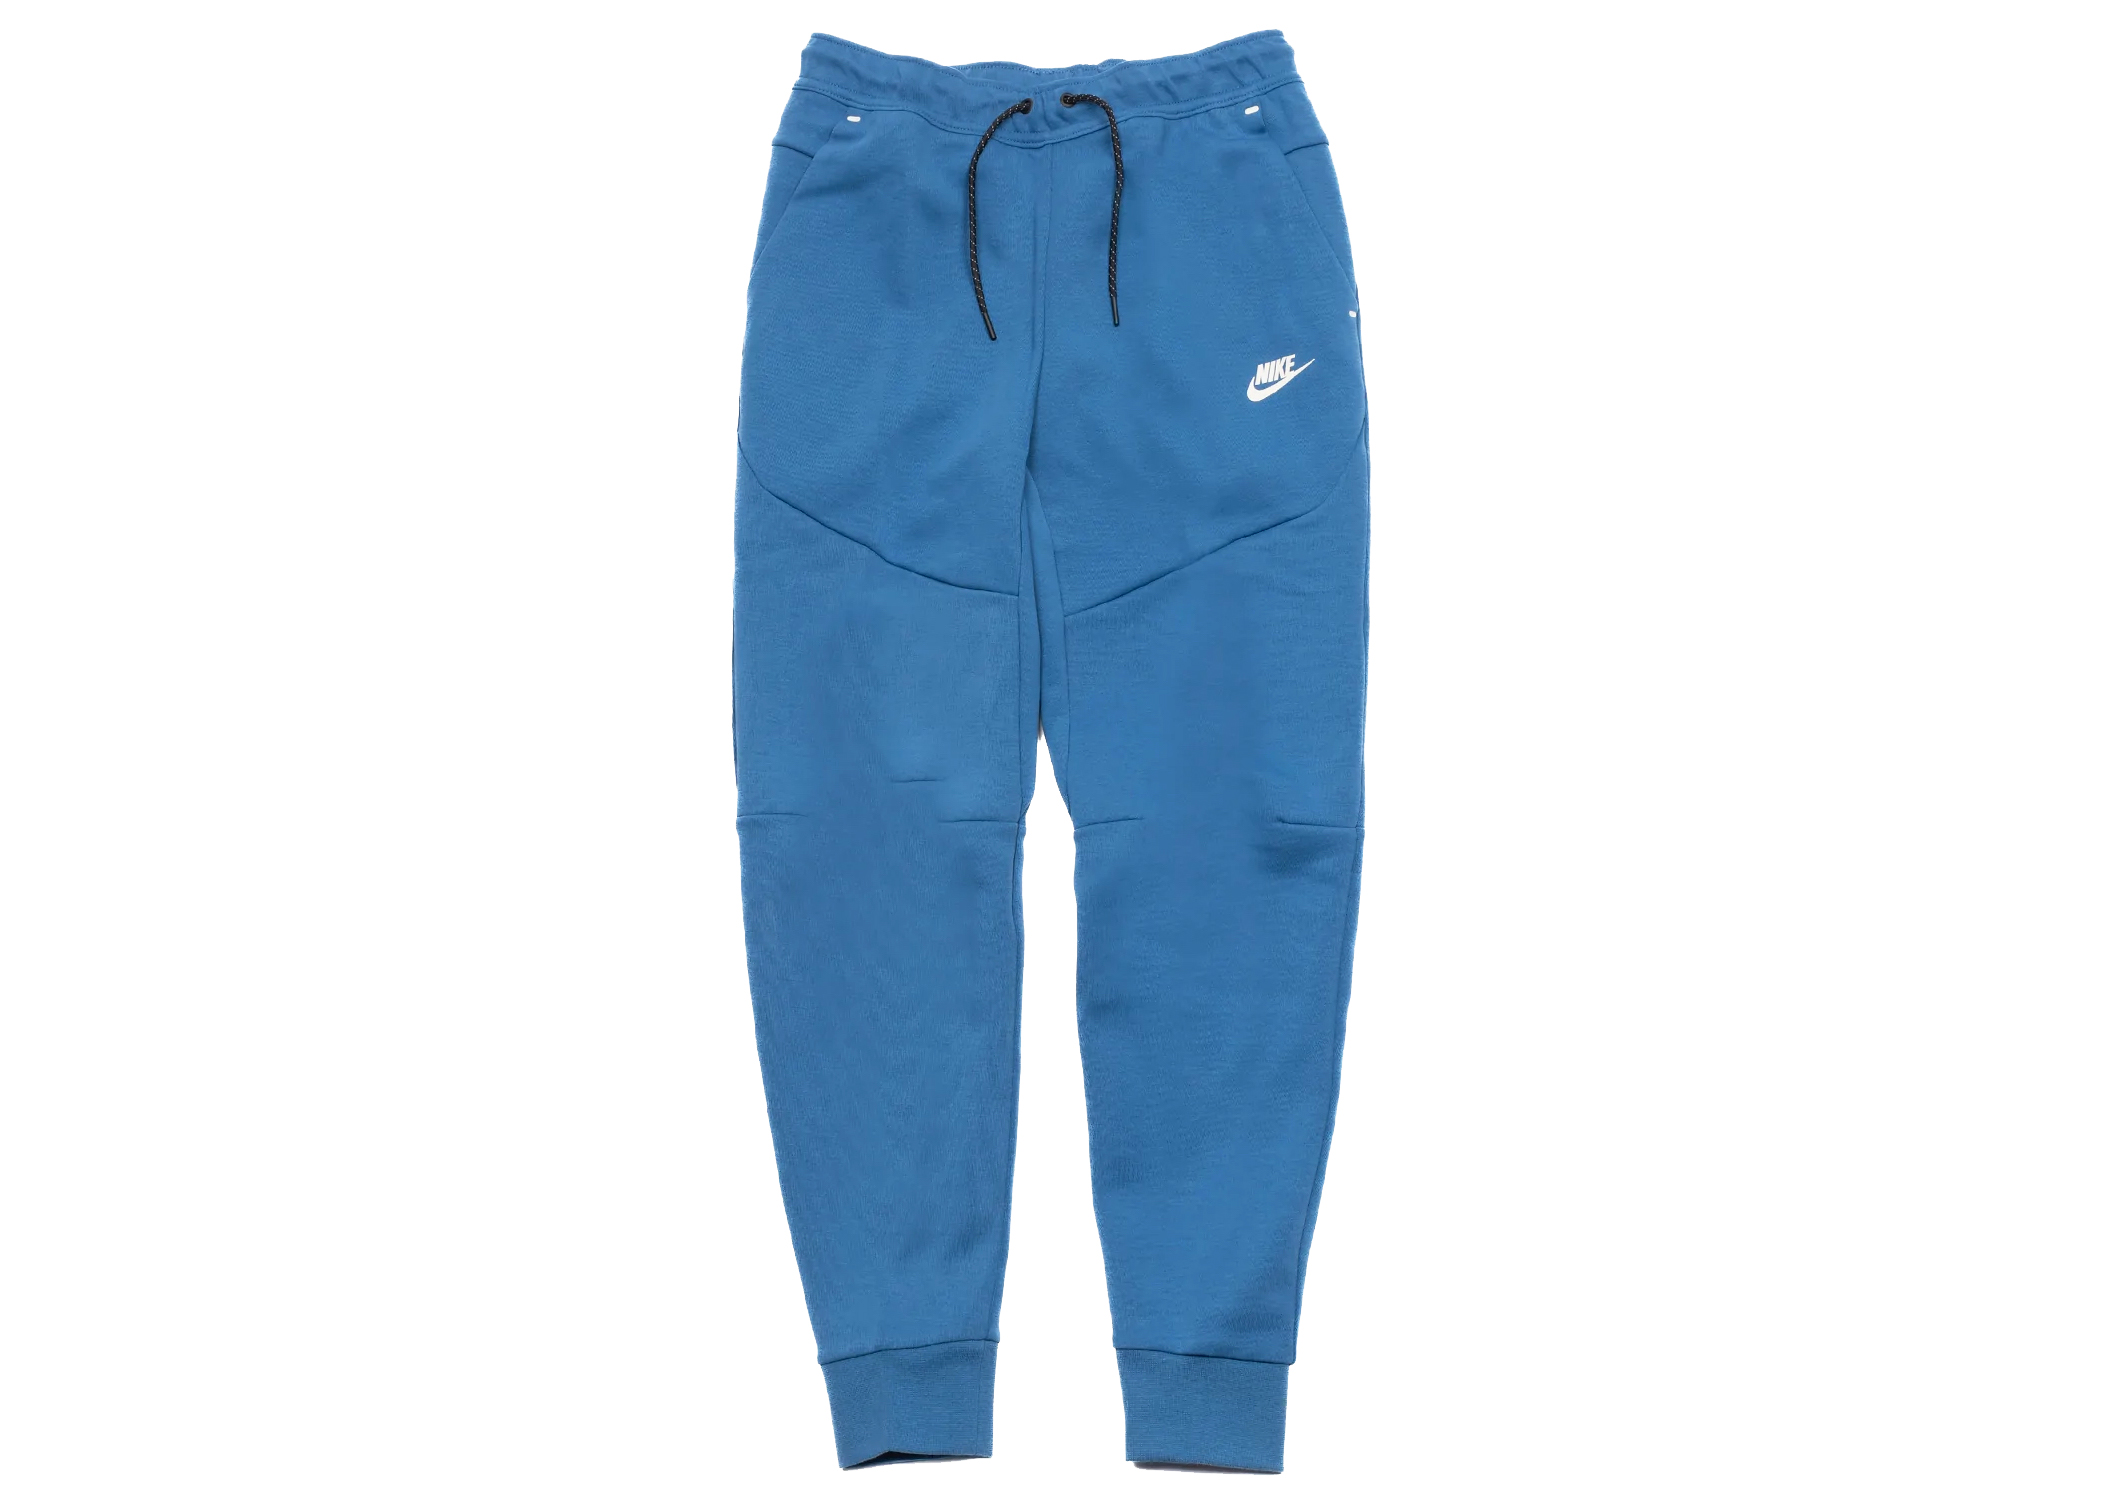 Nike Sportswear Tech Fleece Jogger Pants Obsidian Thunder Blue CU4495-451  Sz XL | eBay